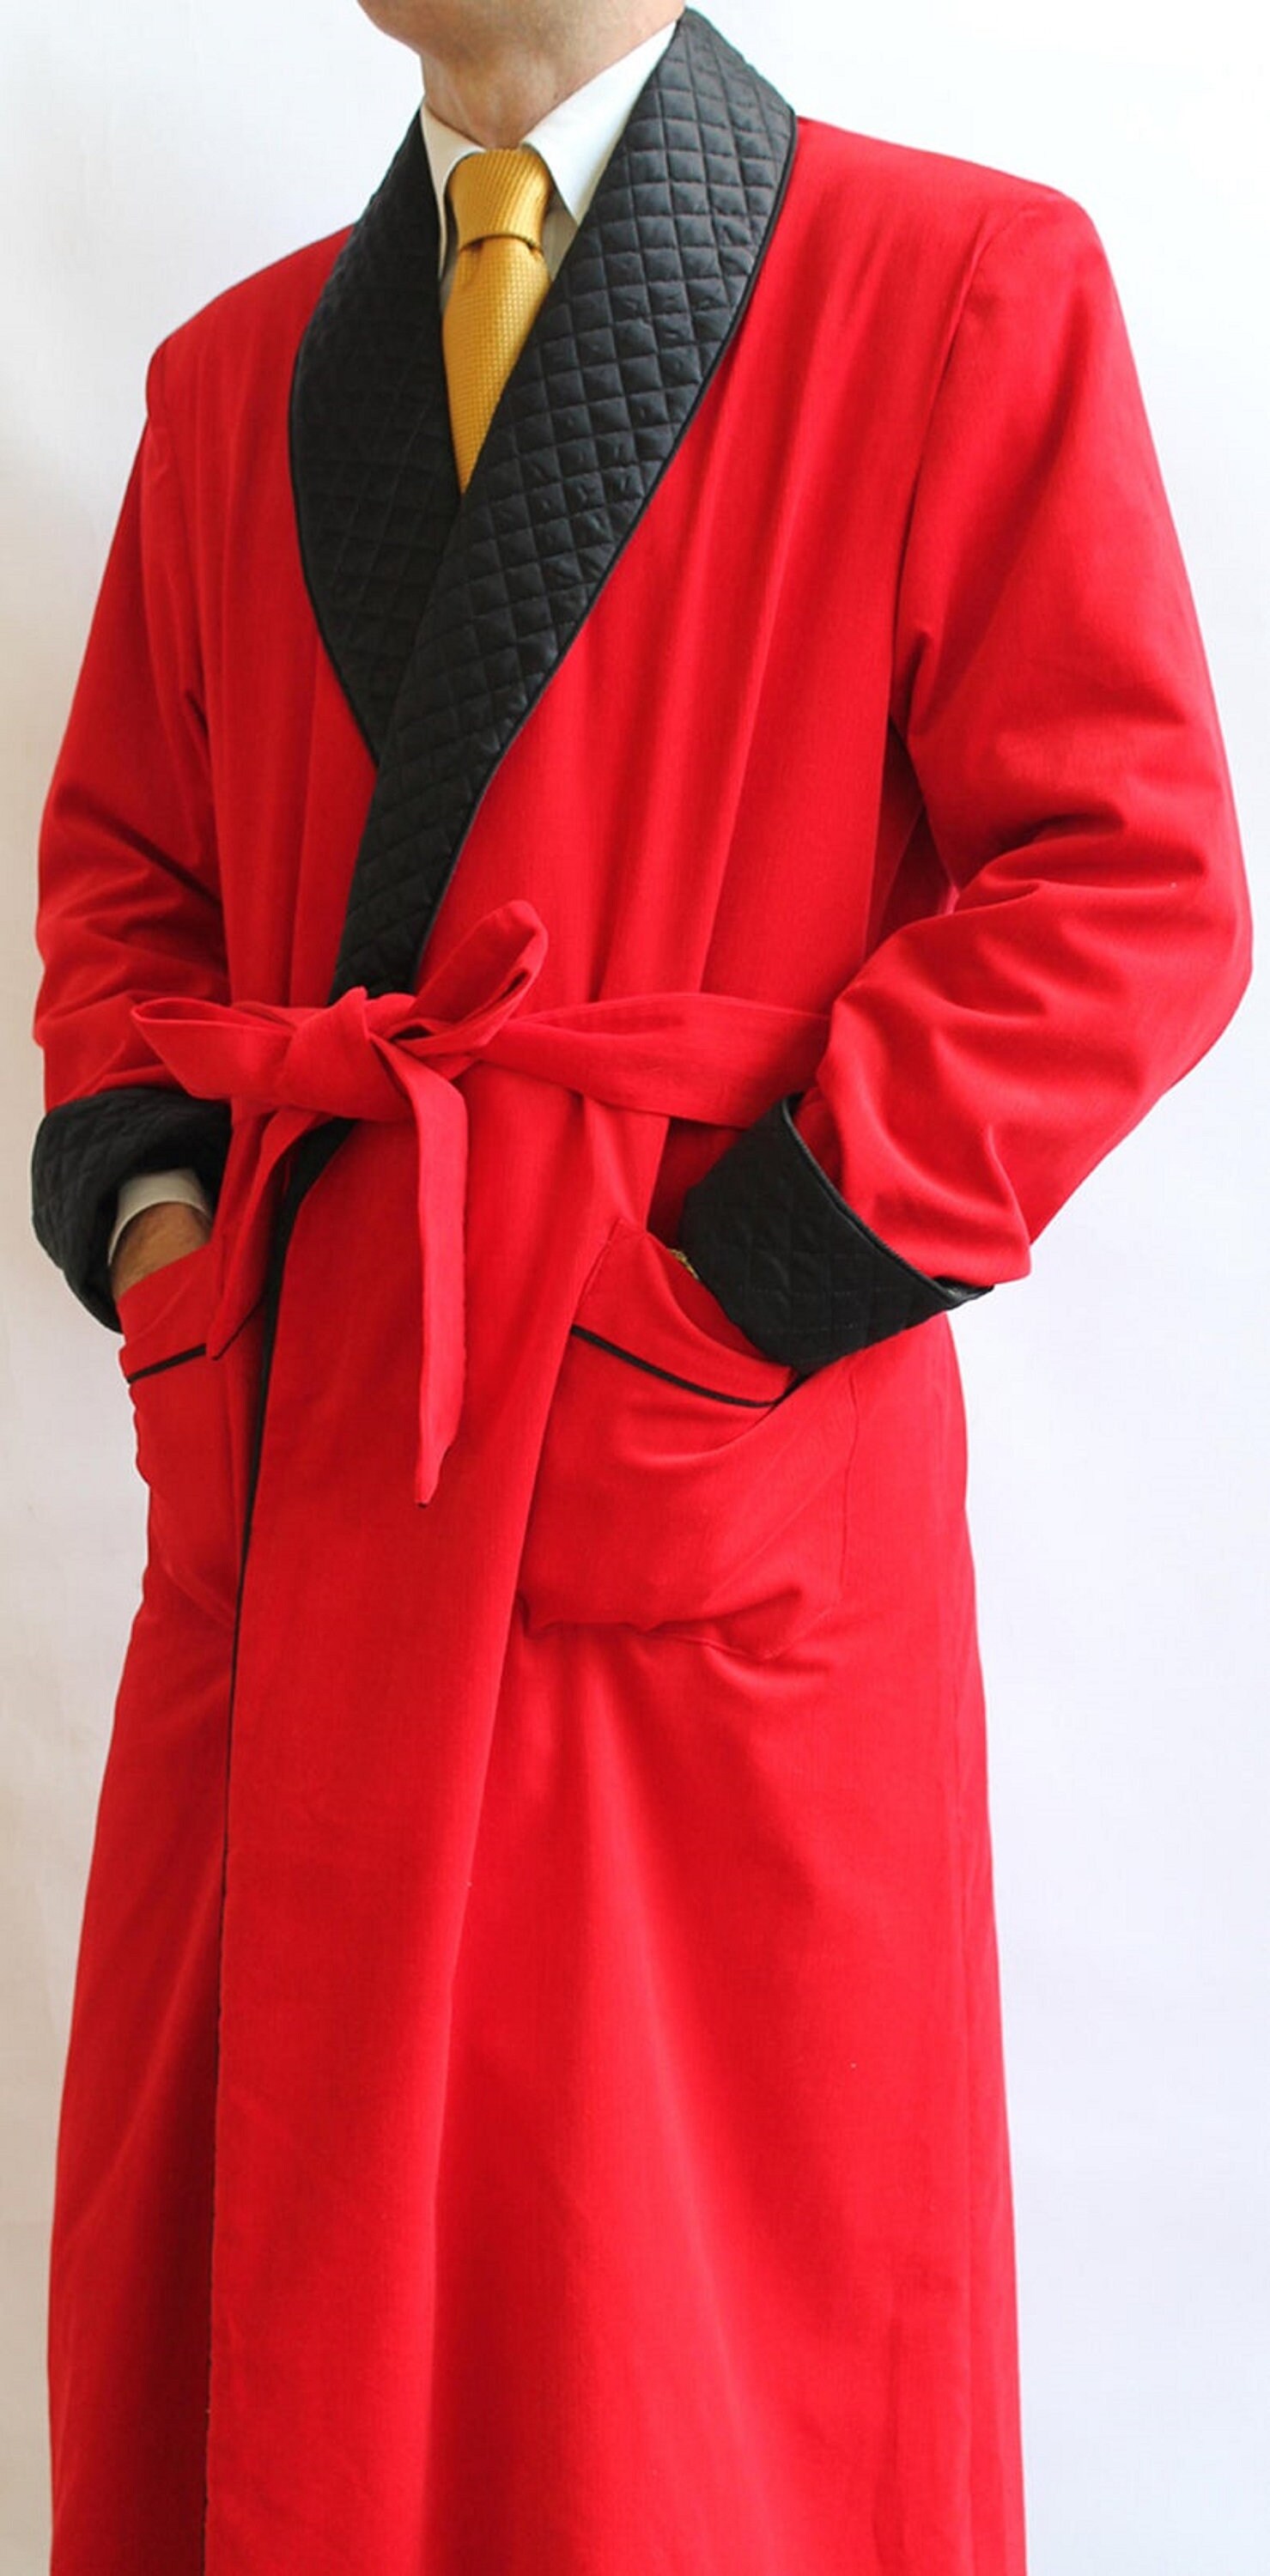 Men's Smoking Robe Jacket Red Velvet Long Coat Hosting - Etsy